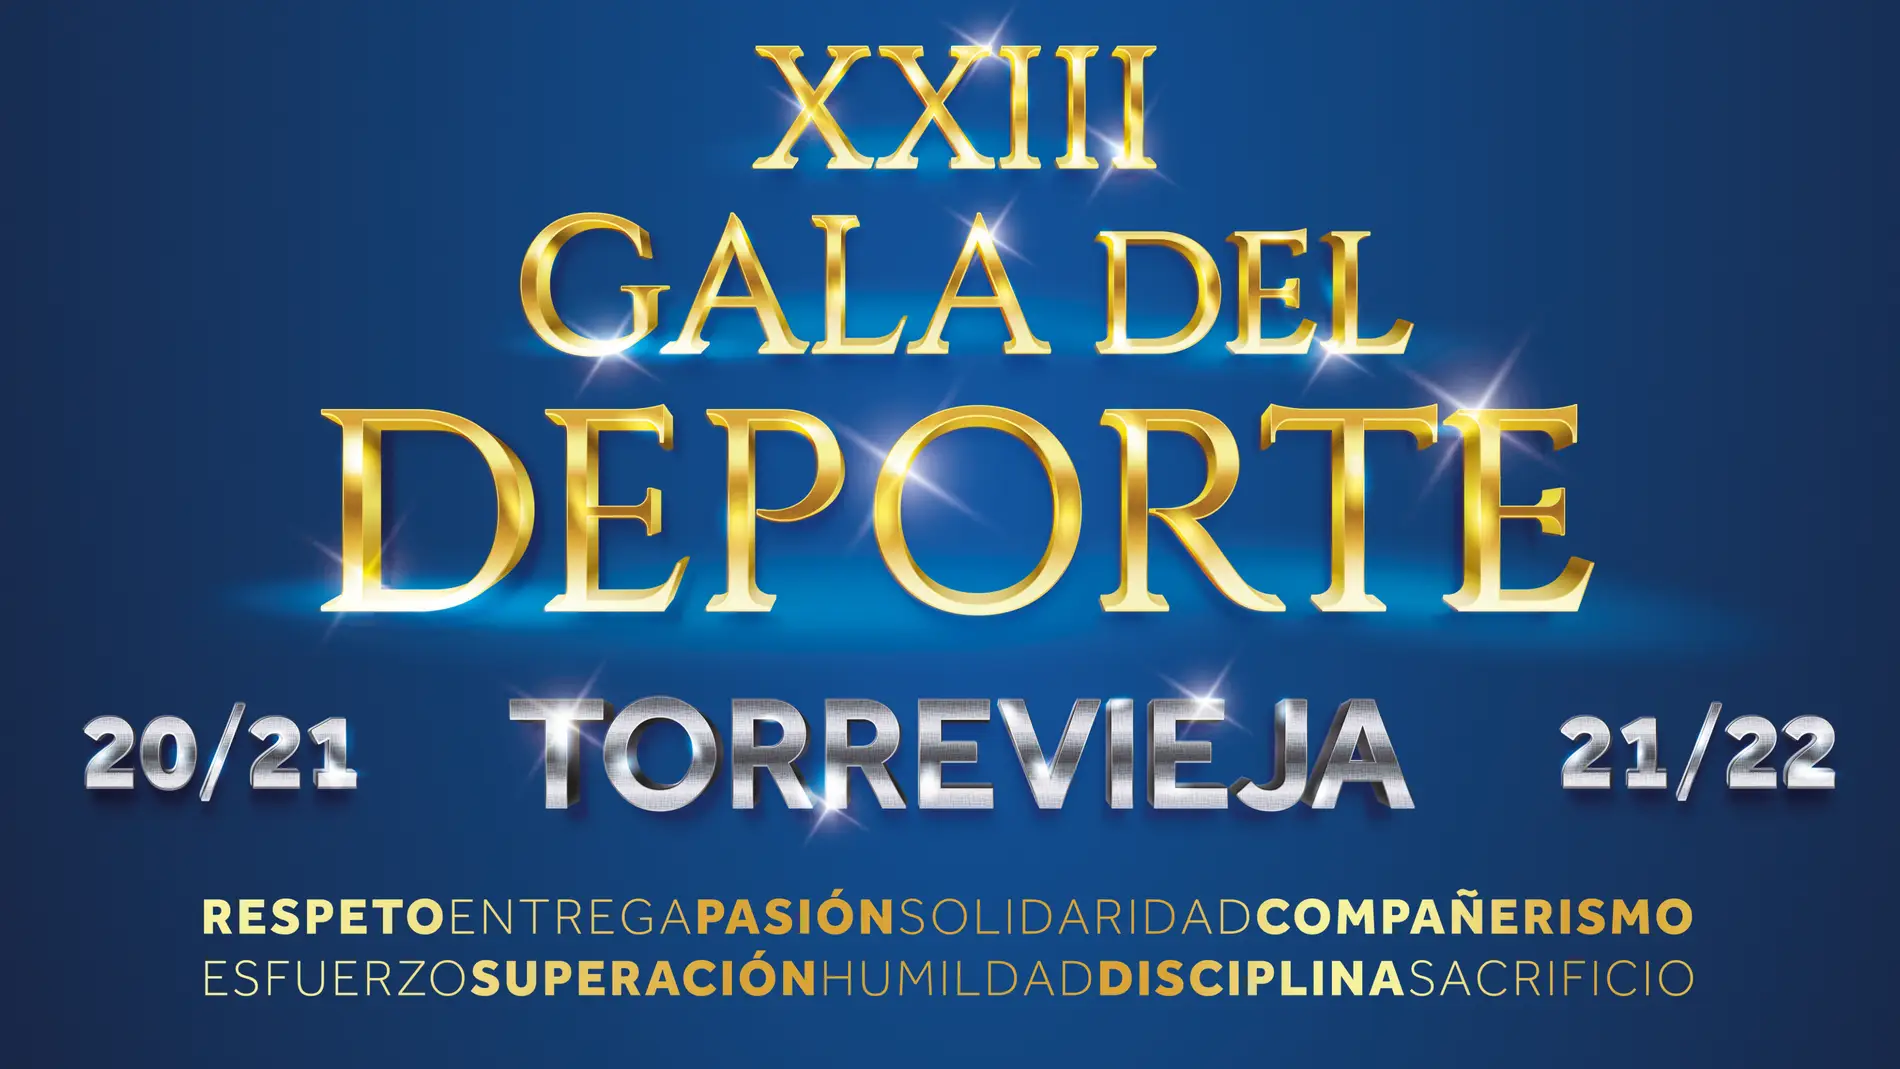 El domingo en el teatro municipal de Torrevieja se celebra la XXIII gala del deporte 